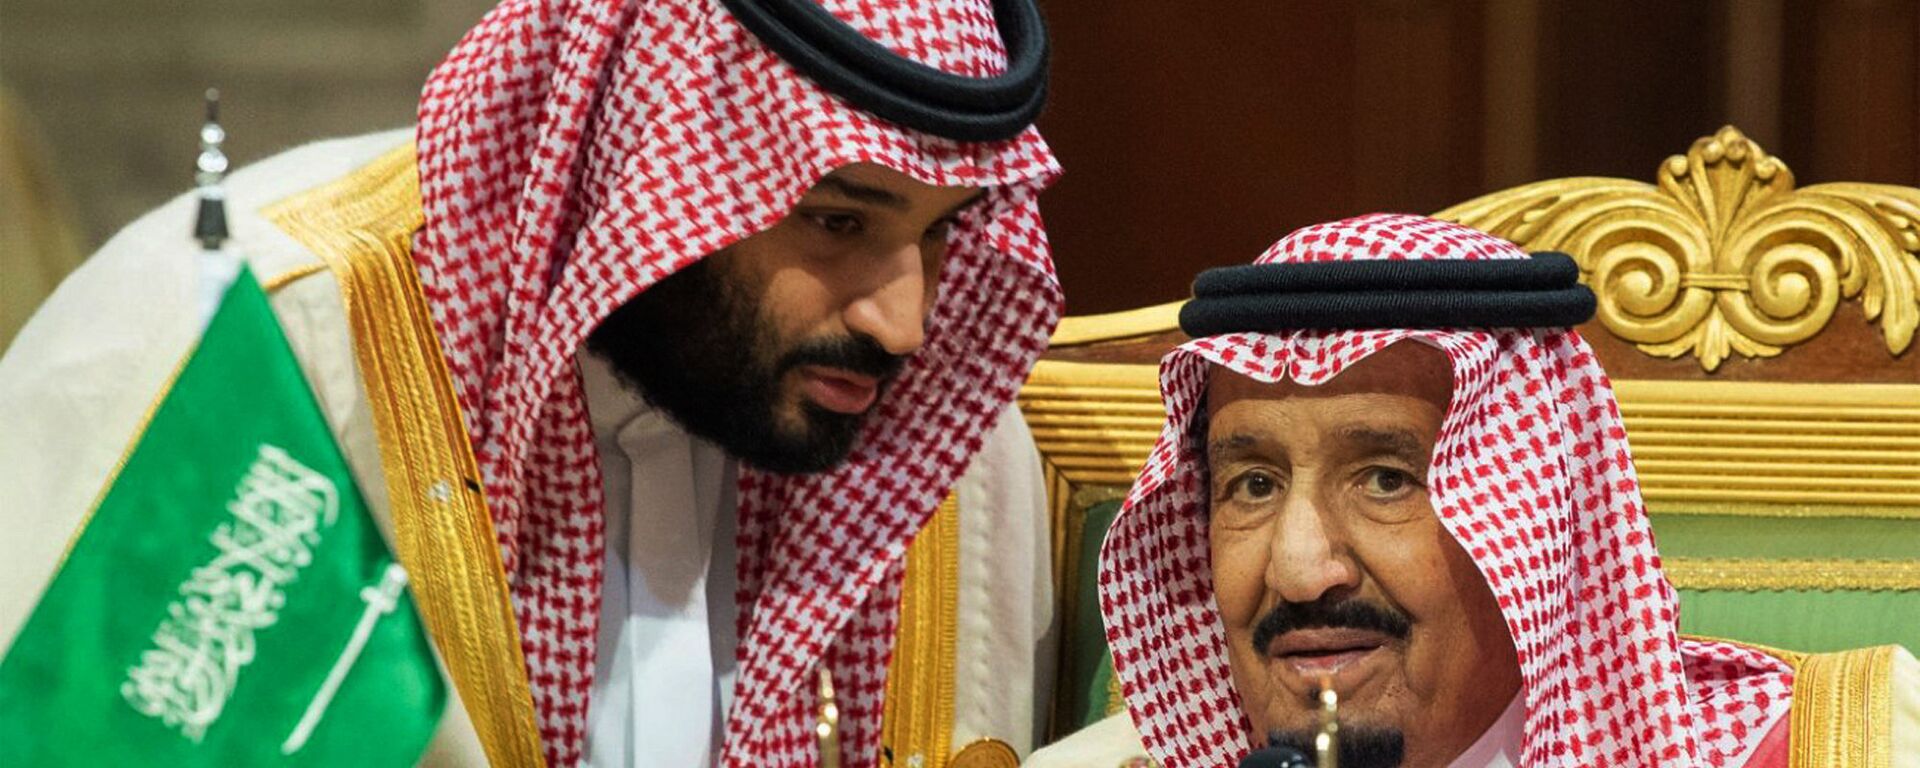 ولي العهد السعودي الأمير محمد بن سلمان يتحدث إلى العاهل السعودي الملك سلمان بن عبد العزيز آل سعود في افتتاح القمة الخليجية الـ 39 في الرياض، 9 ديسمبر/كانون الأول 2018 - سبوتنيك عربي, 1920, 18.02.2021